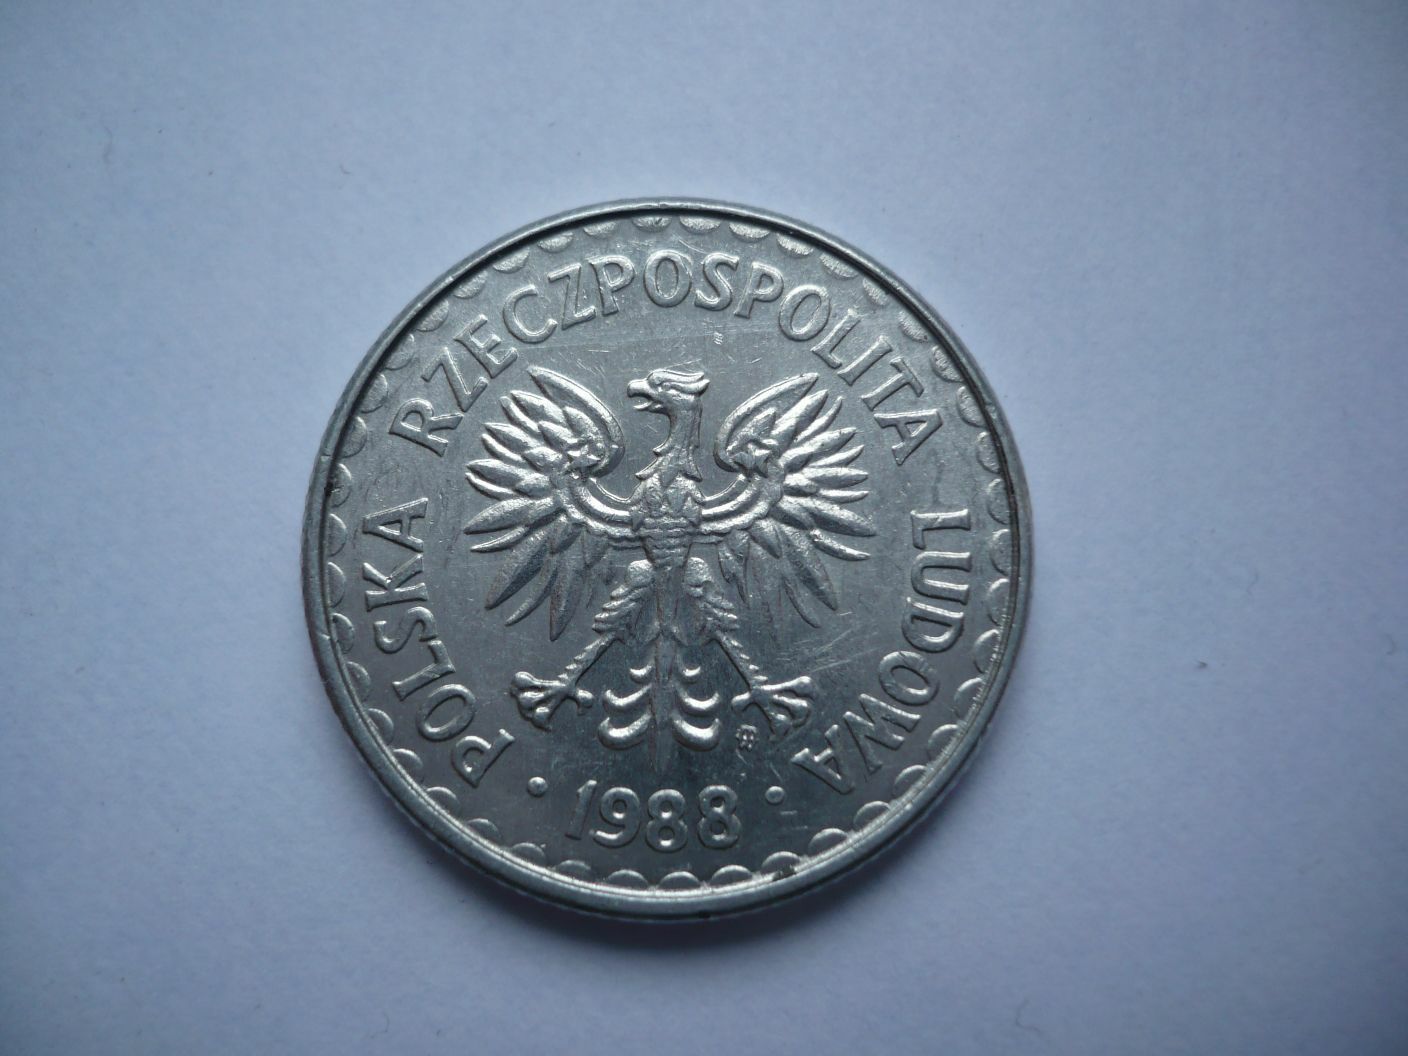 Moneta PRL - 1 zł z 1988r, mennicza